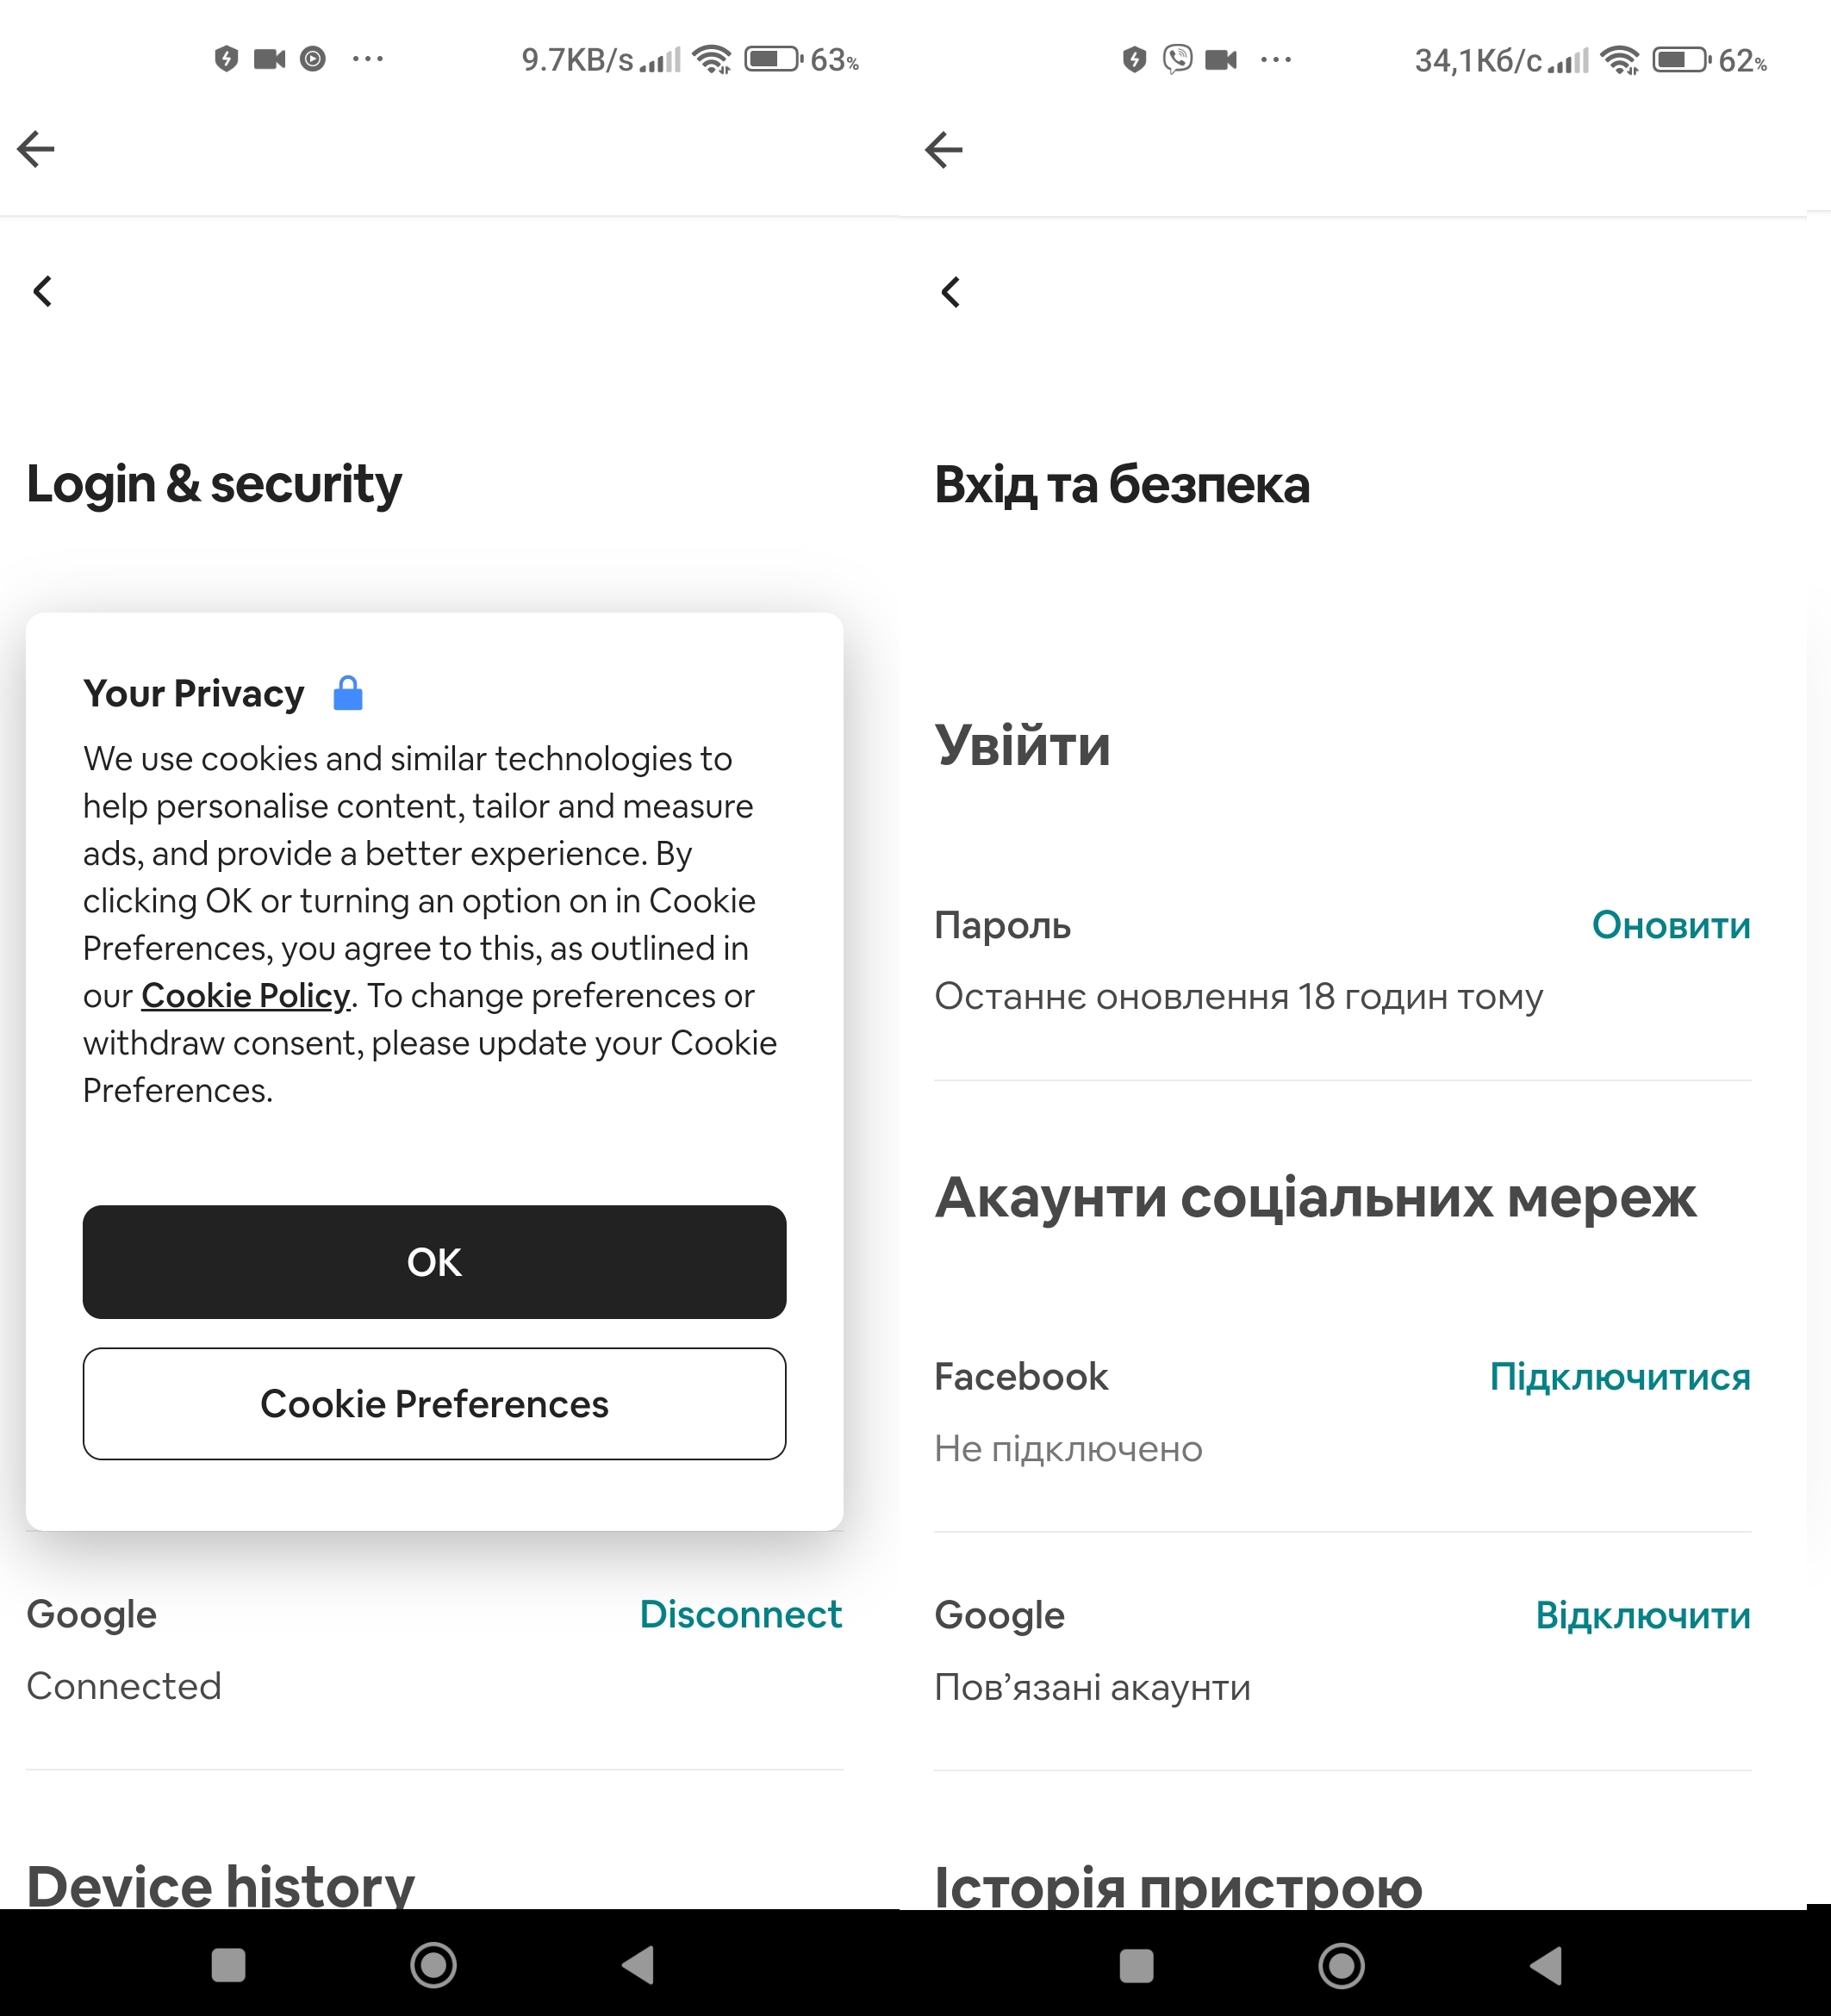 Die ukrainische Version der Anwendung hat kein Cookie-Banner